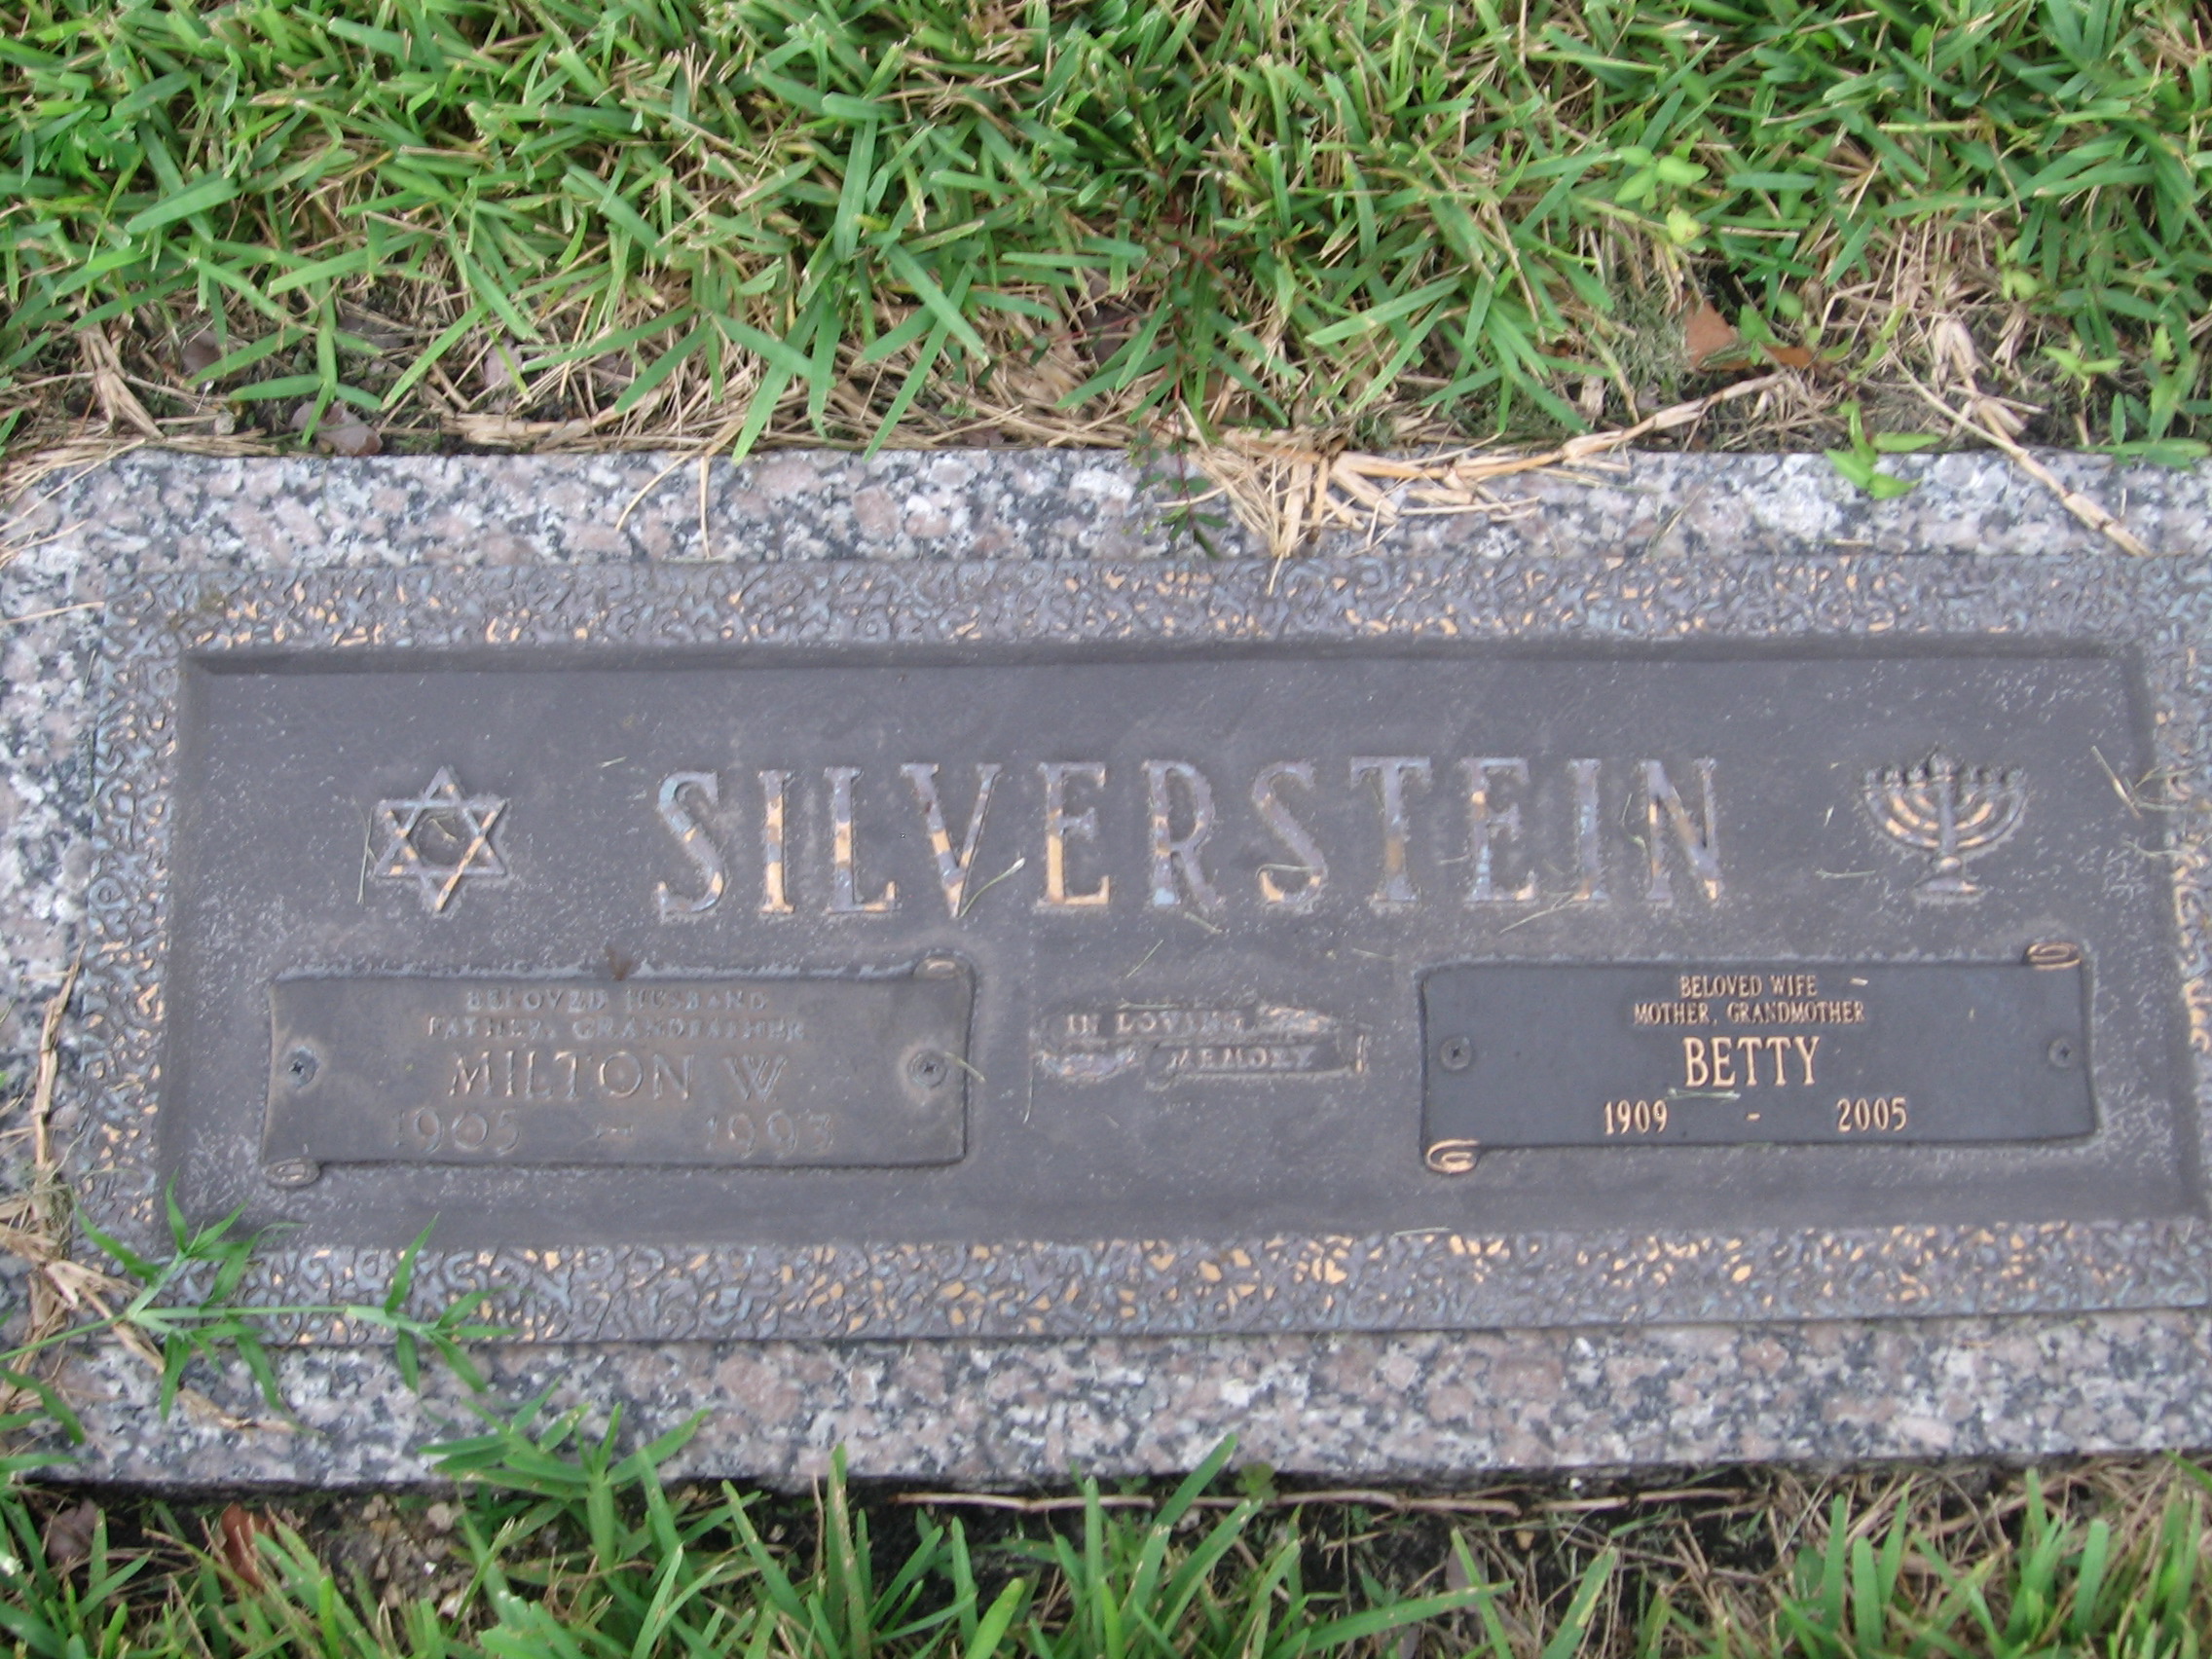 Betty Silverstein